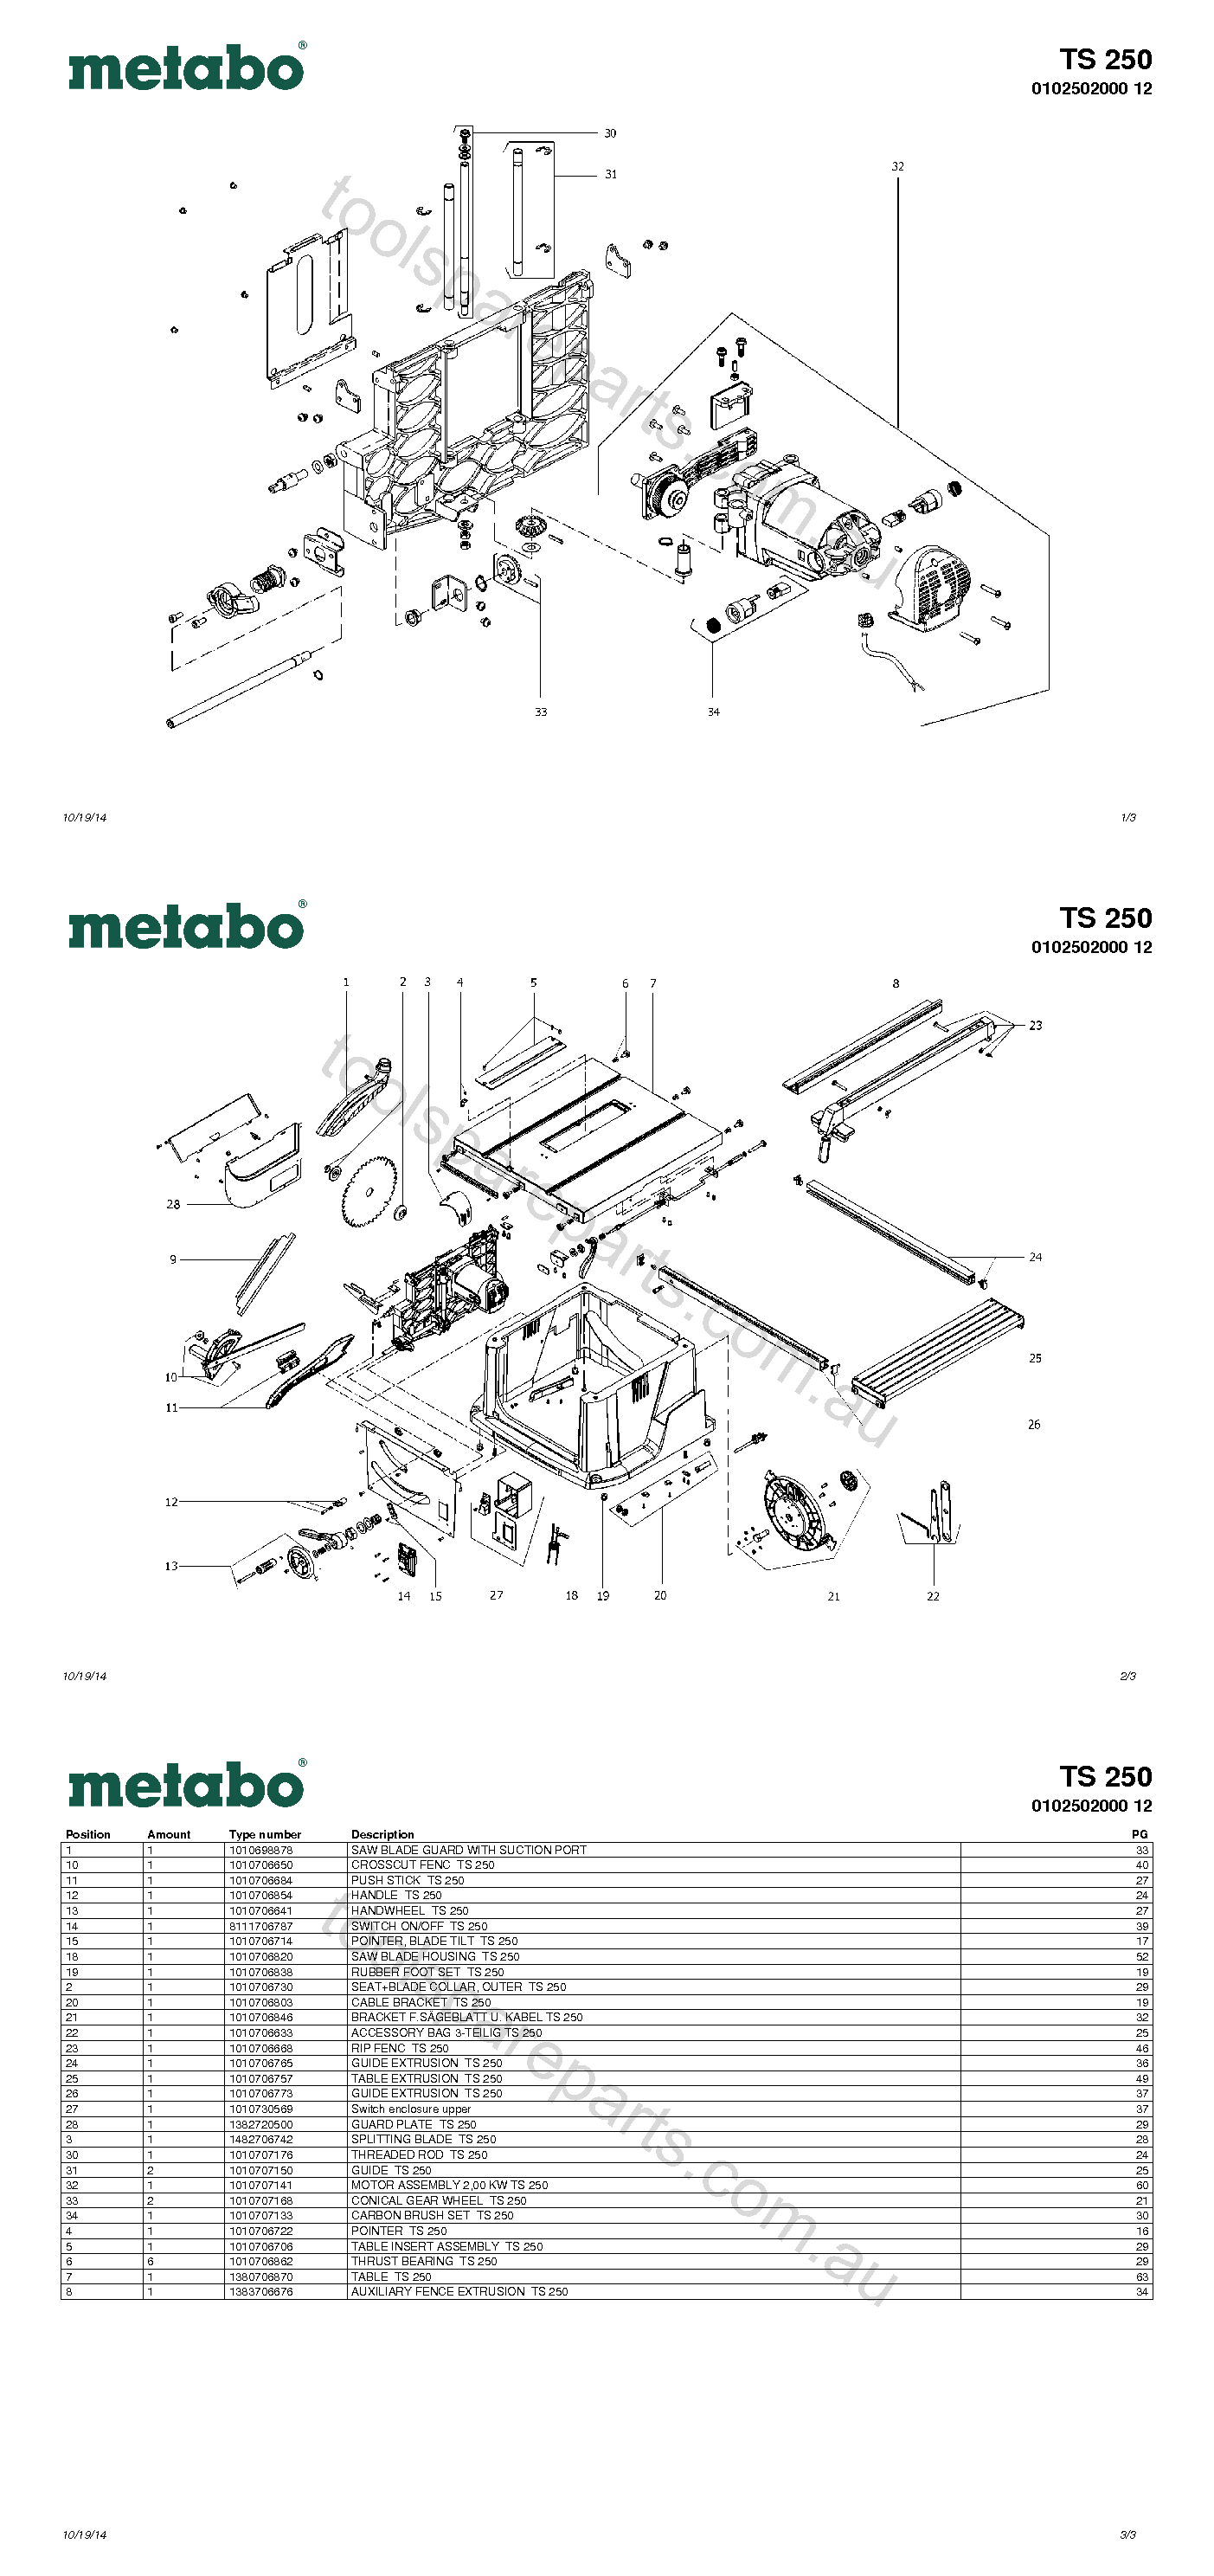 Metabo TS 250 0102502000 12  Diagram 1